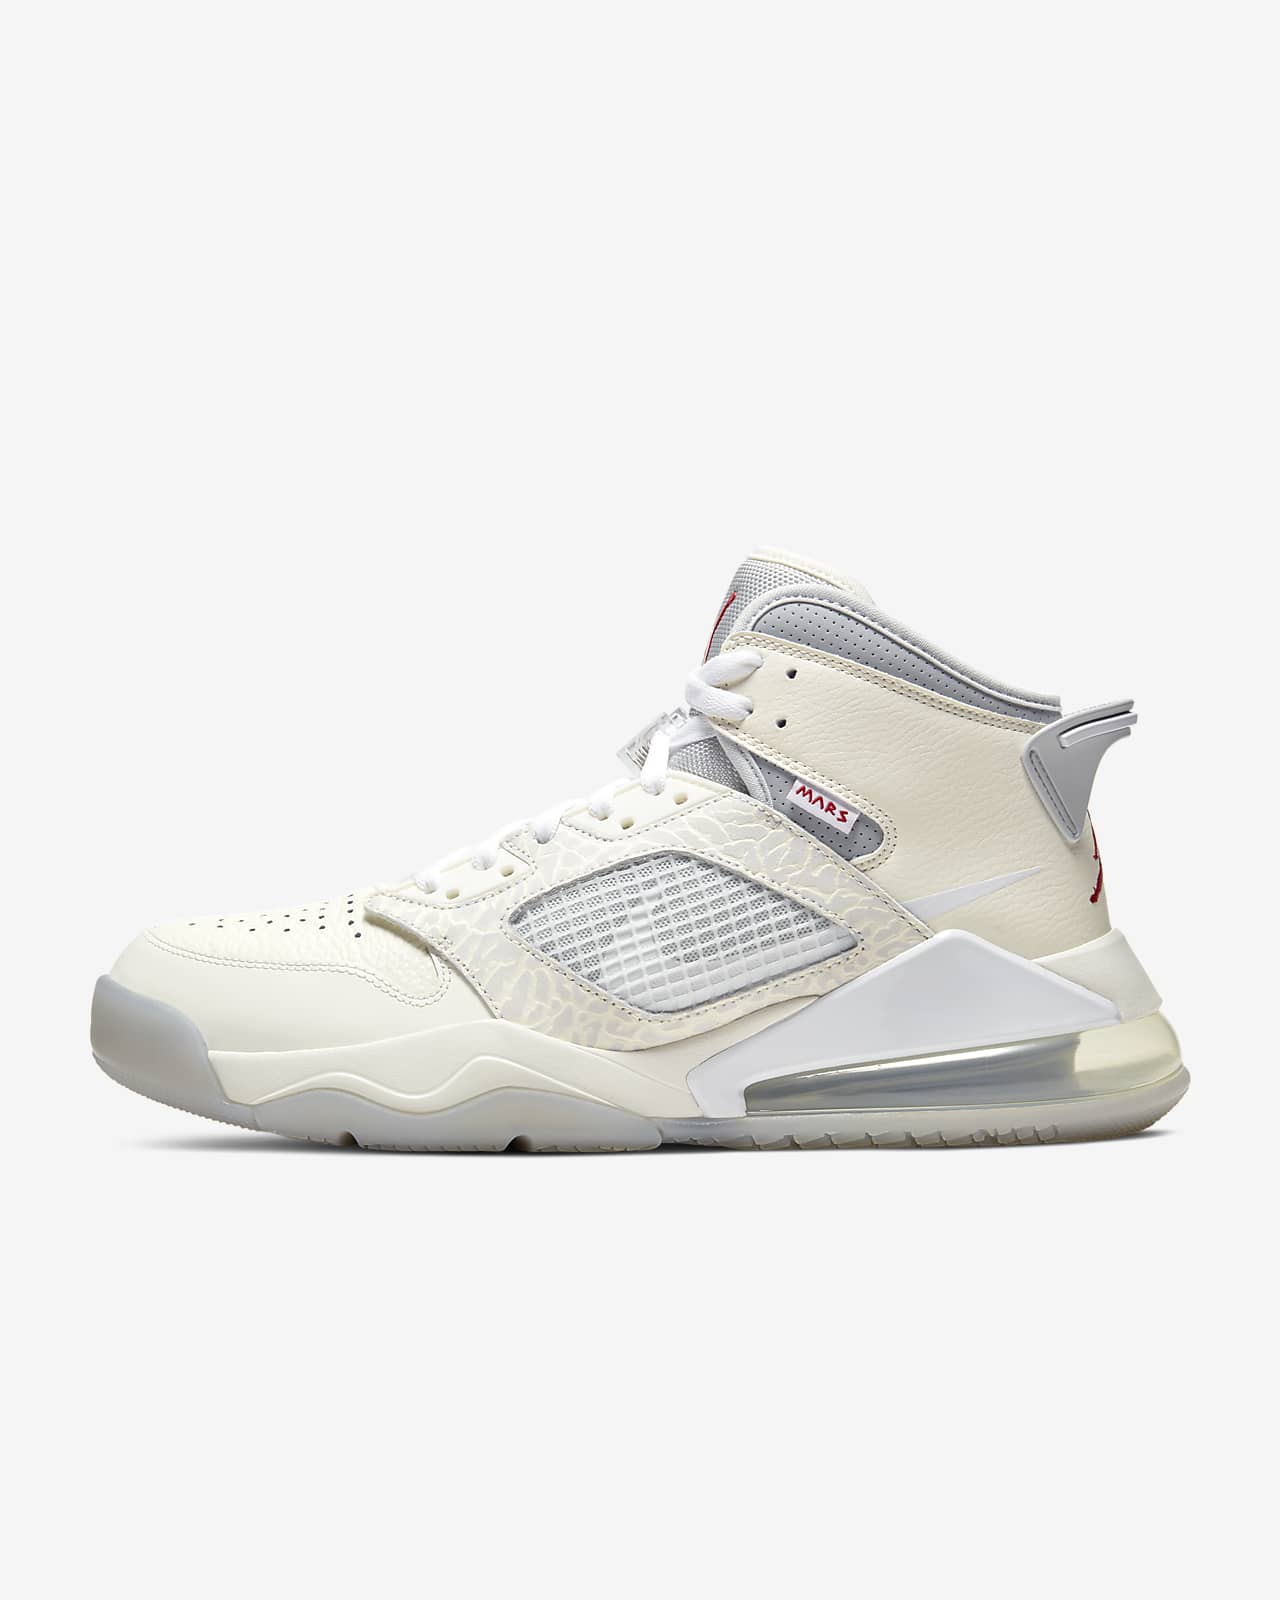 Jordan Mars 270 Men's Shoe. Nike LU